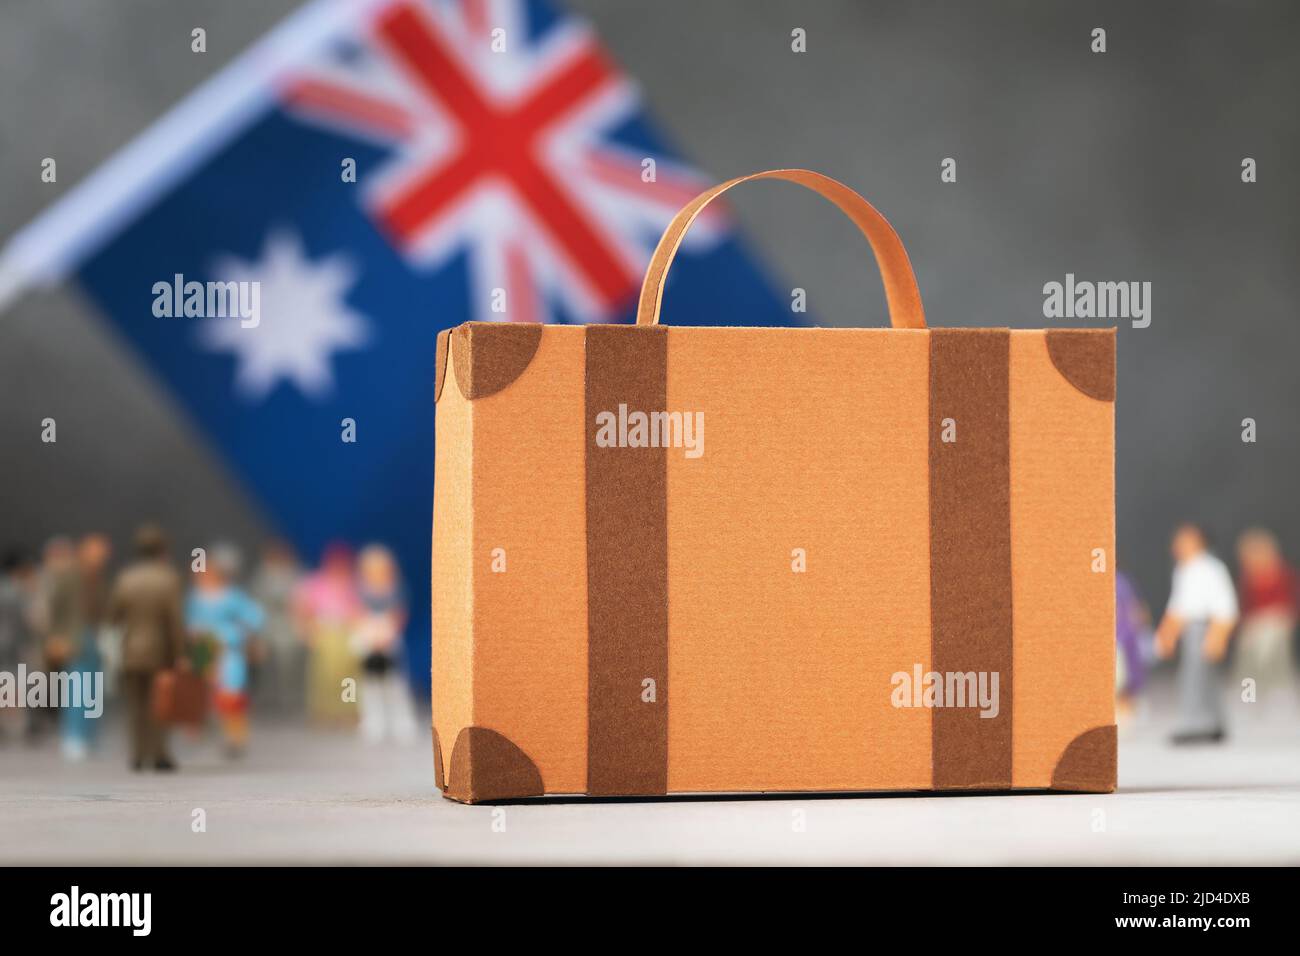 Maleta de cartón, juguetes de plástico y una bandera en un fondo abstracto, un concepto sobre el tema de mudarse o la inmigración a Australia Foto de stock